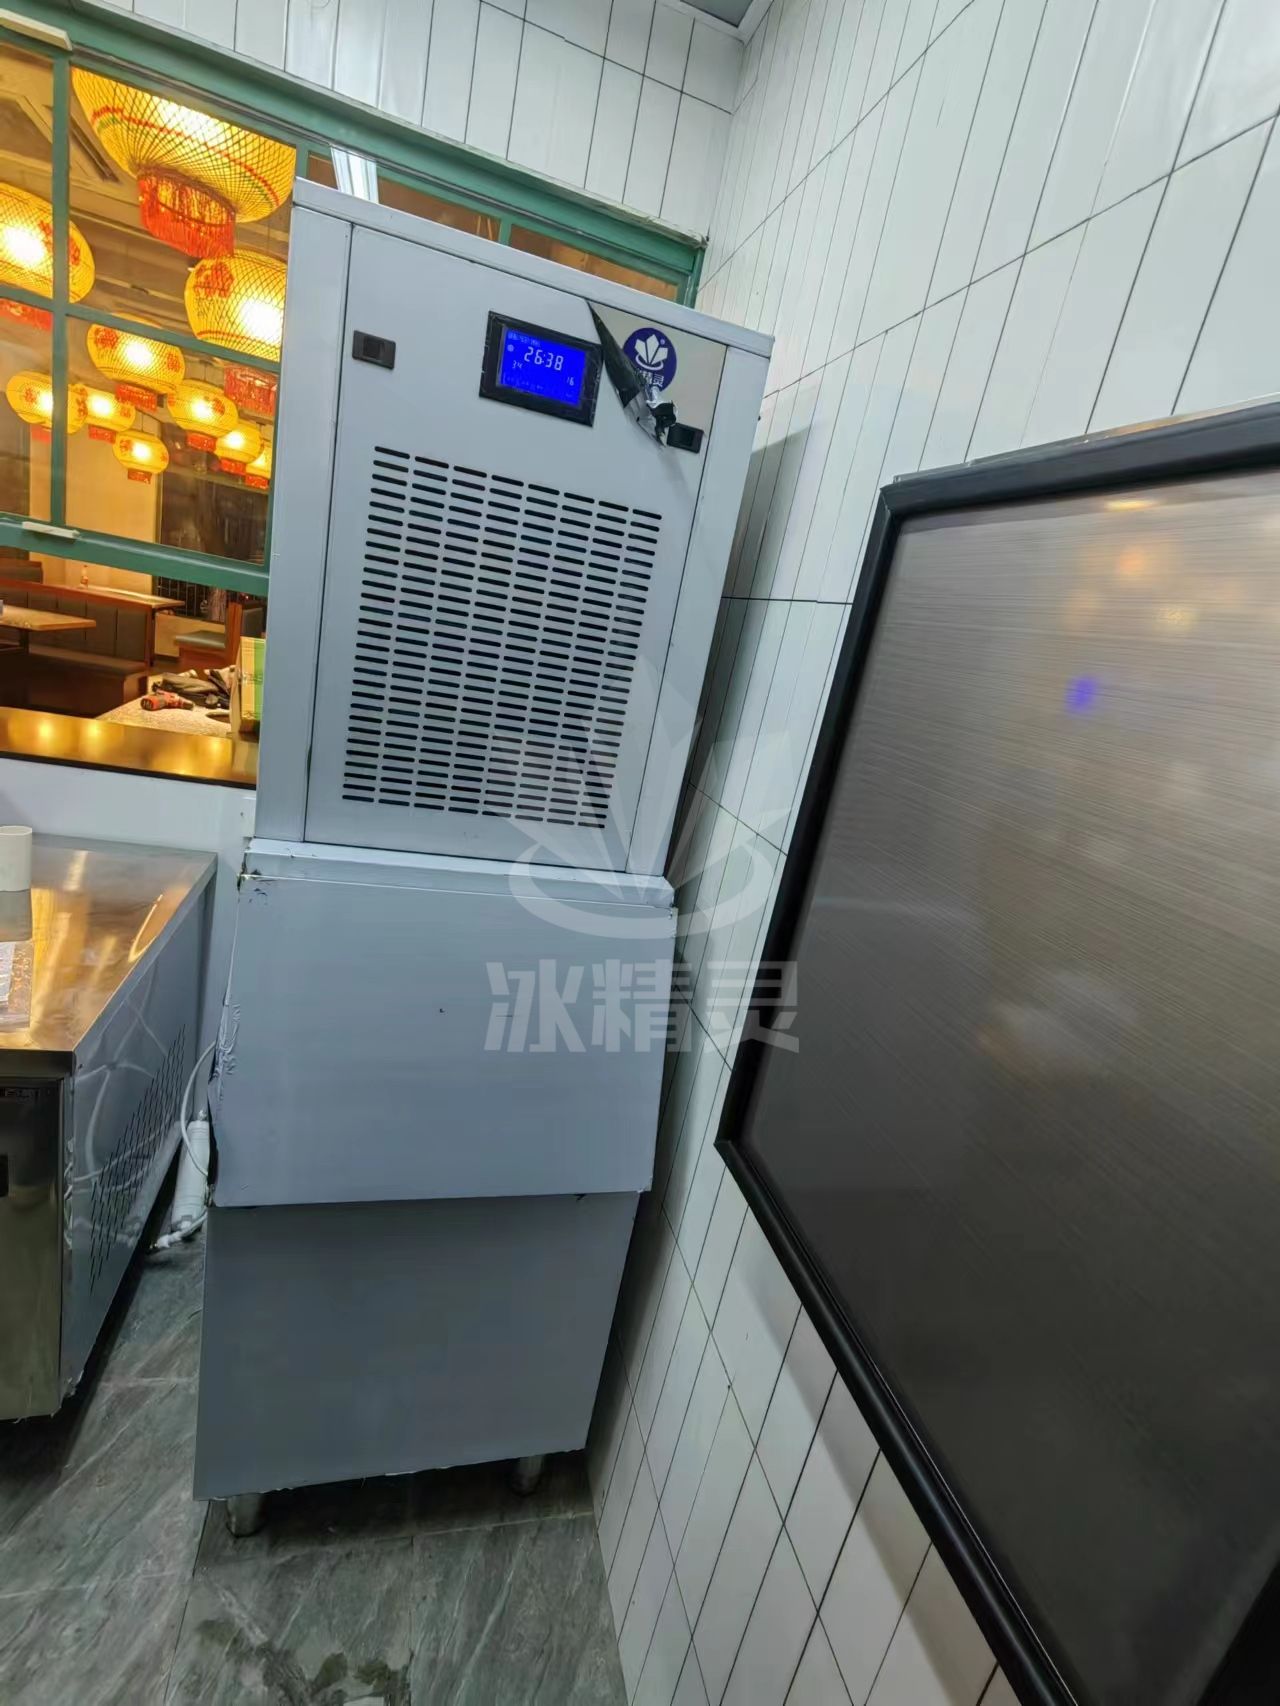 200公斤花雪花碎冰颗粒制冰机已交付江苏太仓《禾禧泥炉火锅》